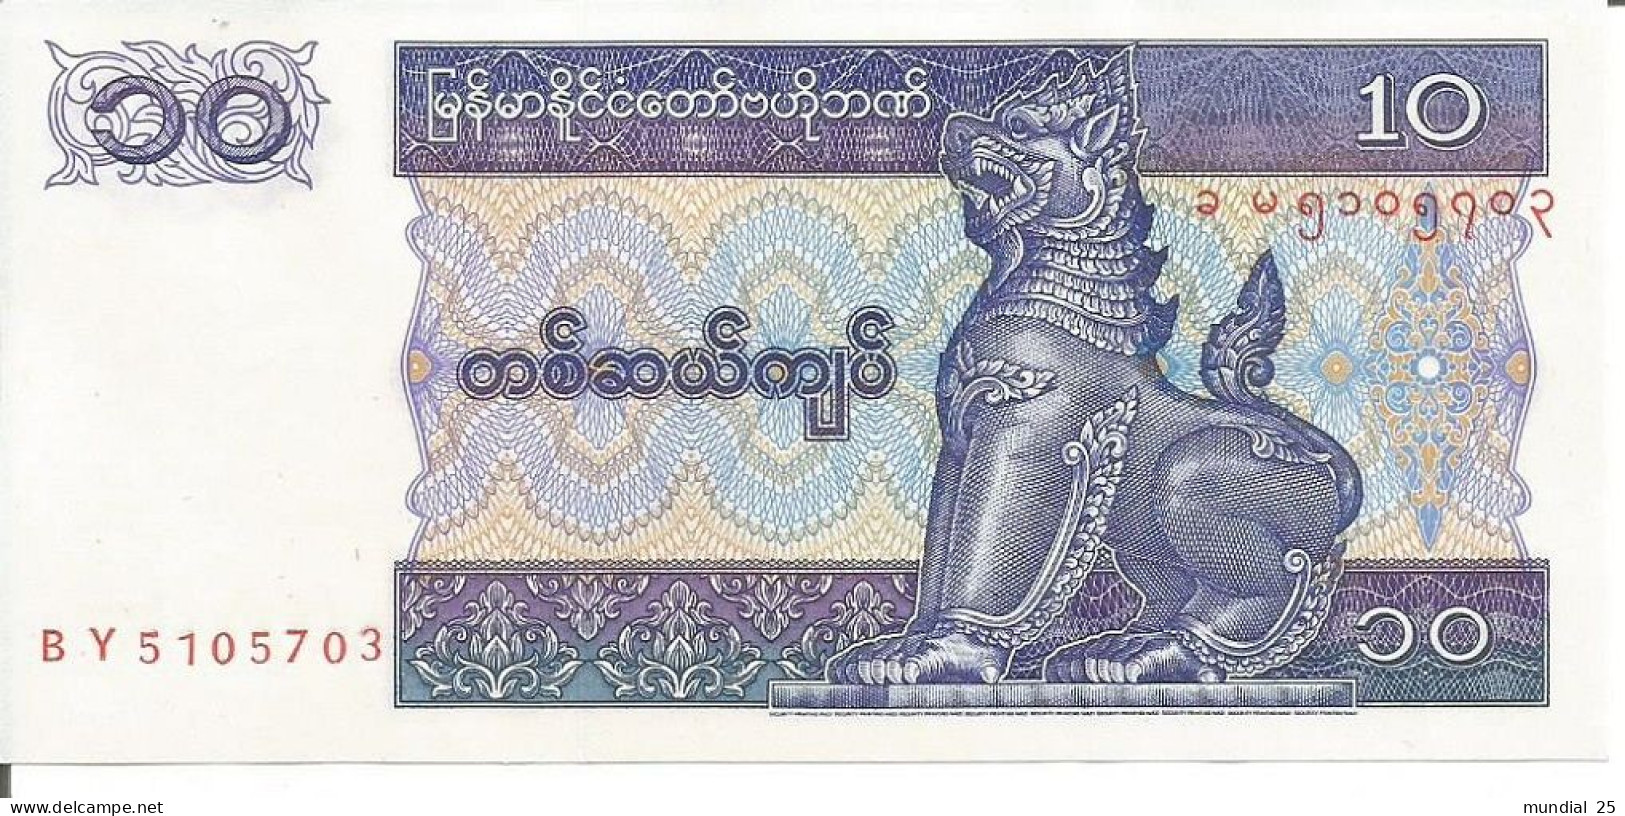 3 MYANMAR NOTES 10 KYATS N/D (1996) - Myanmar